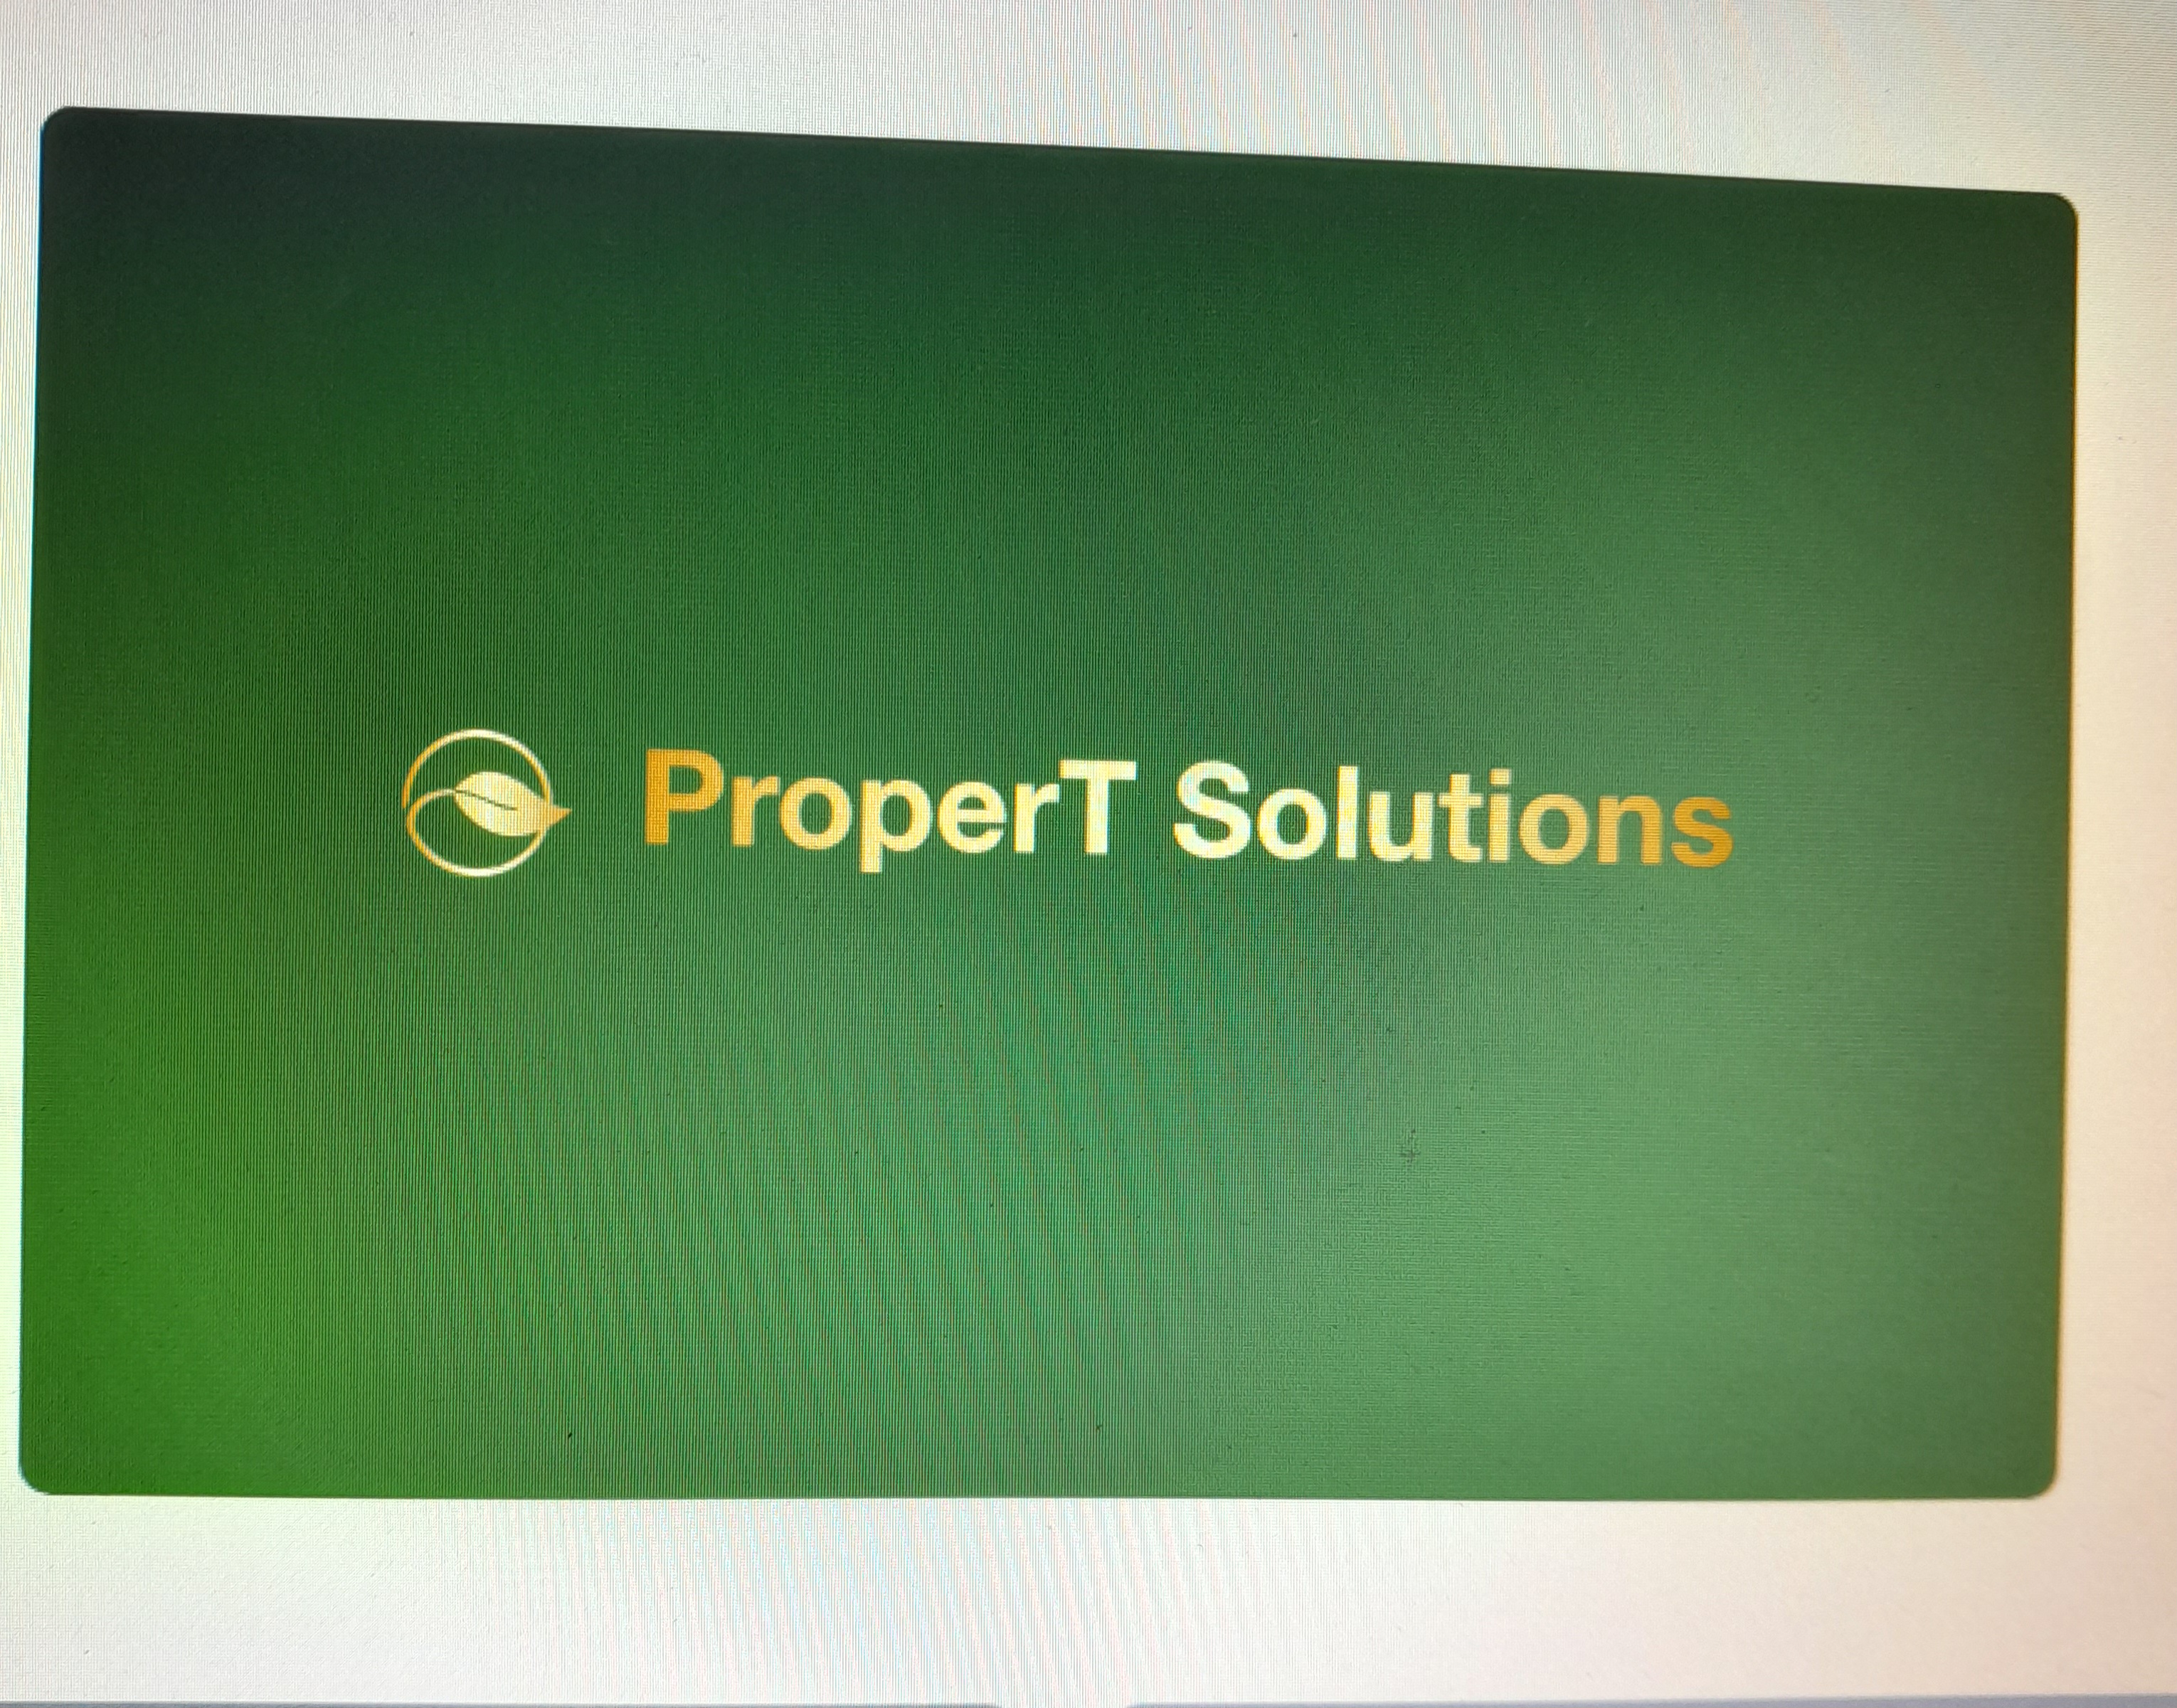 Proper T Solutions Logo